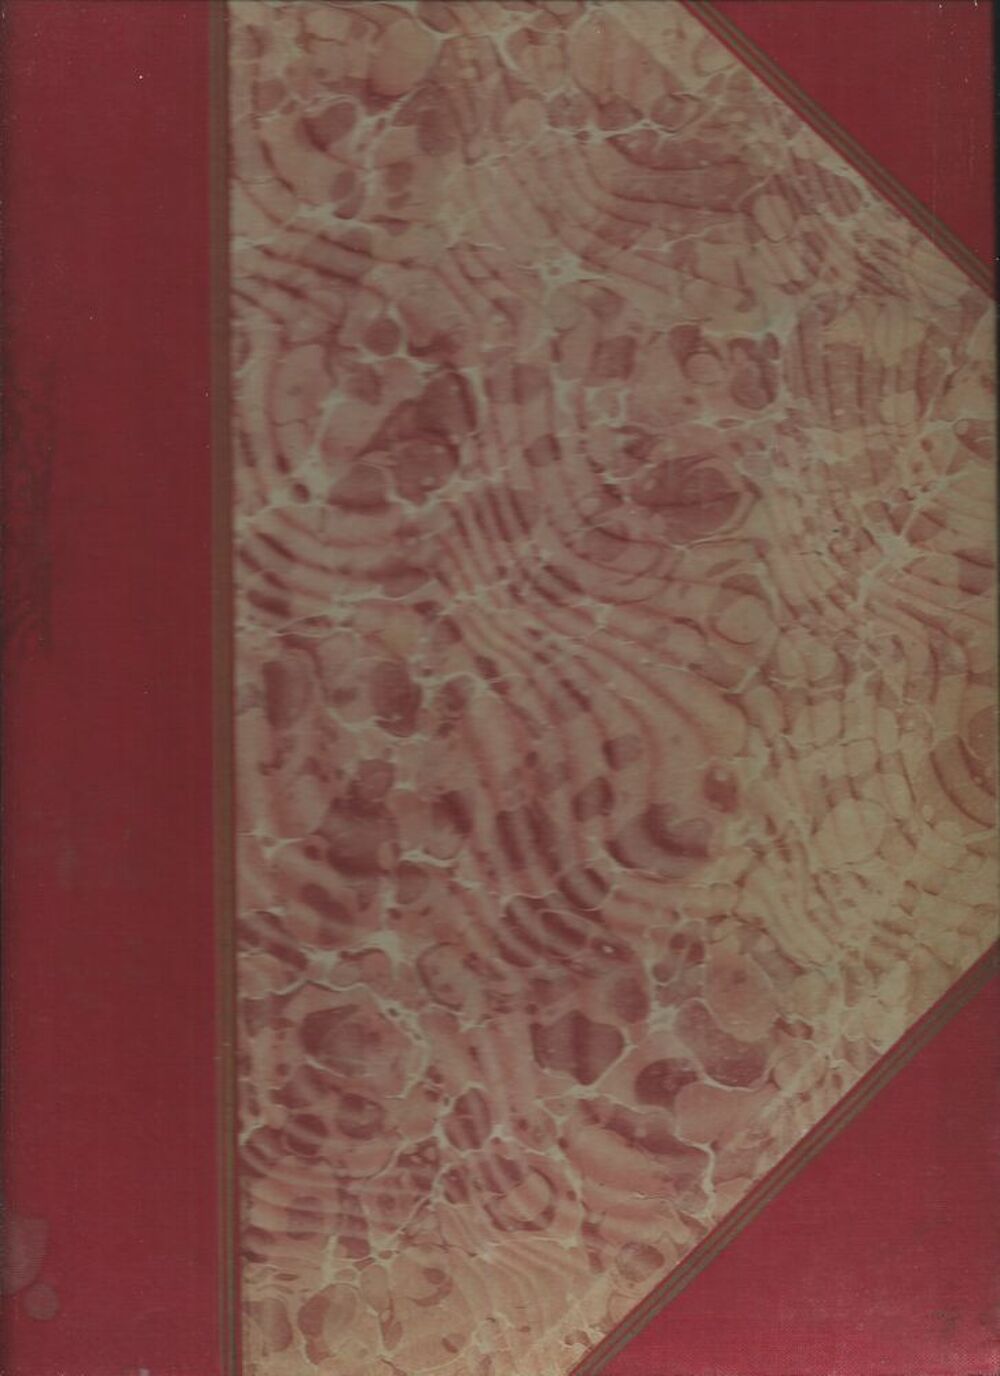  les H&eacute;ros de m&eacute;dine de Henri Monet 1898 Livres et BD